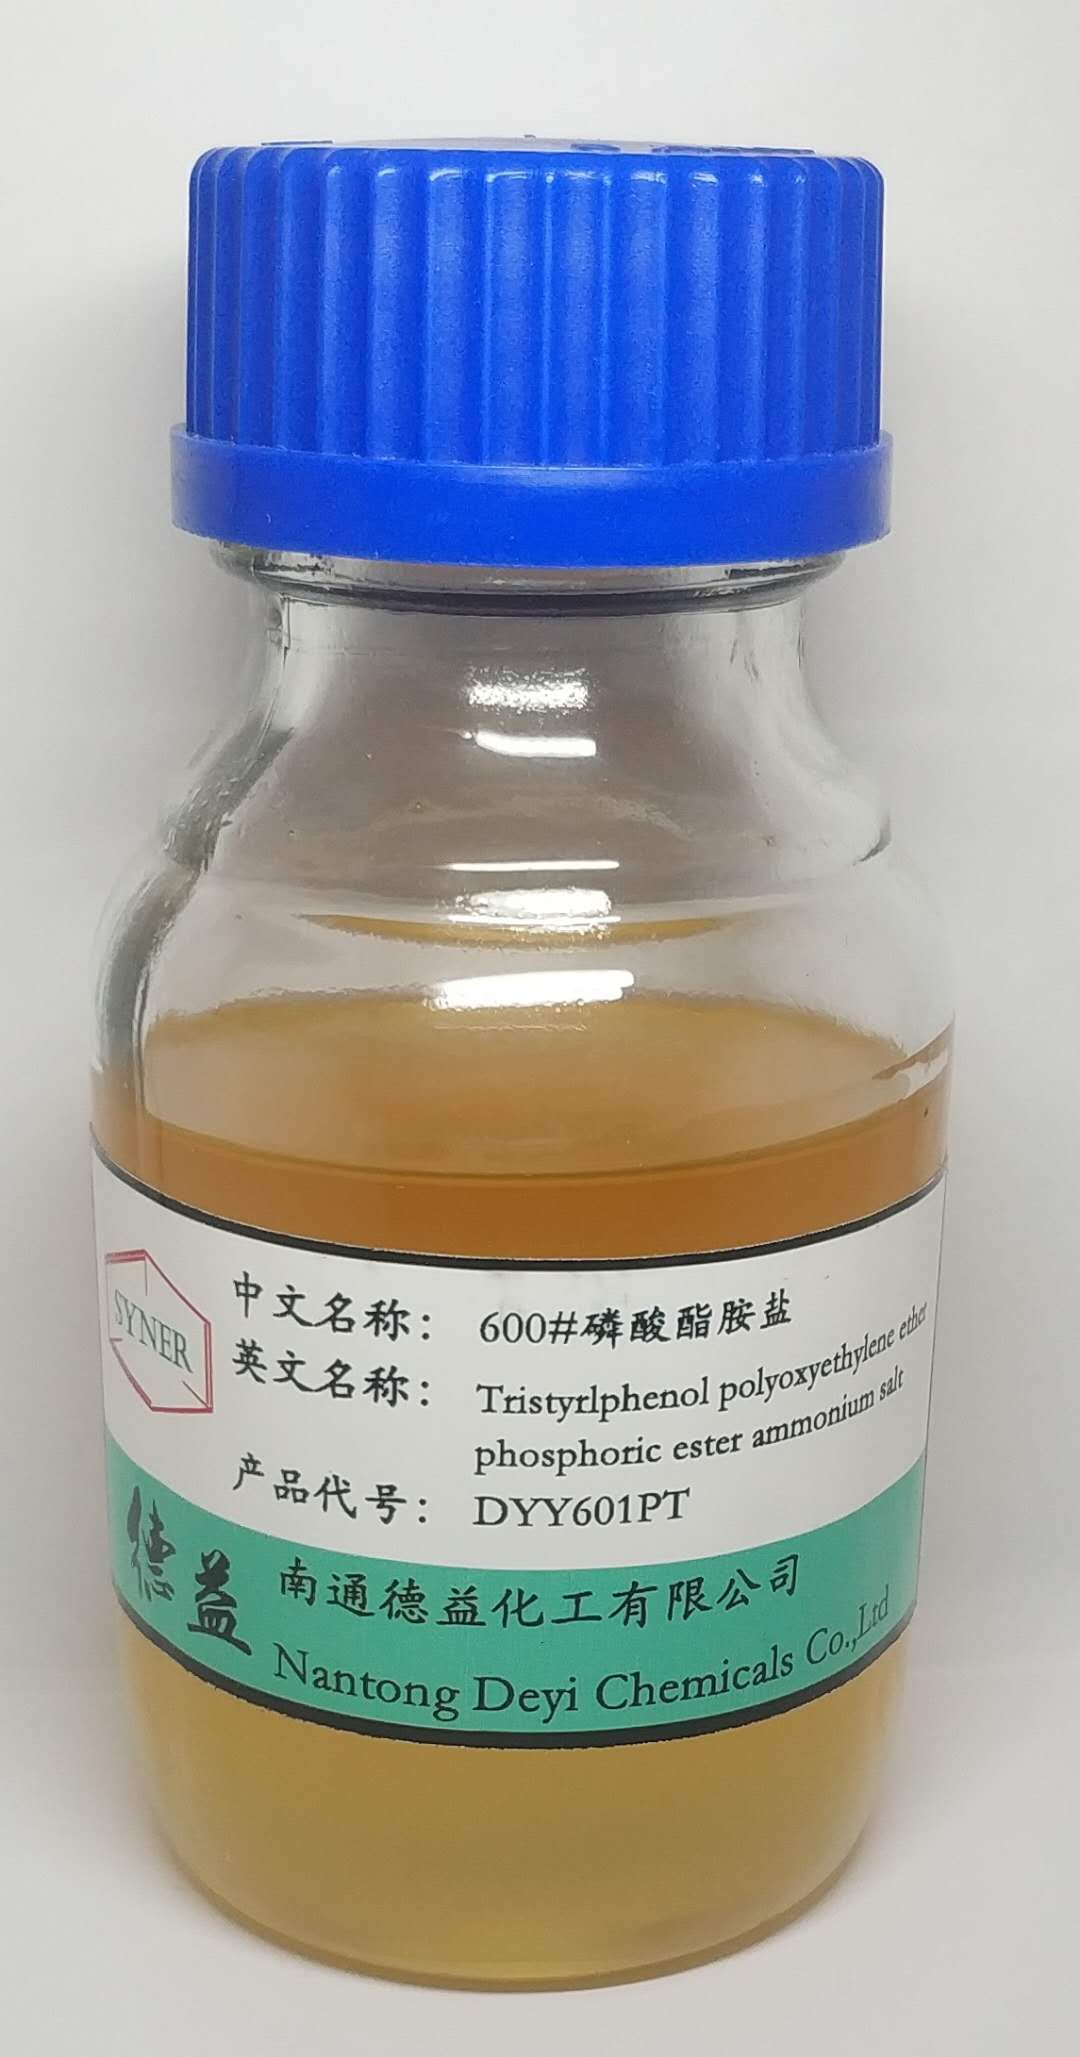 Pnenol Polyoxyethylene Etherpnosphnte Salt 